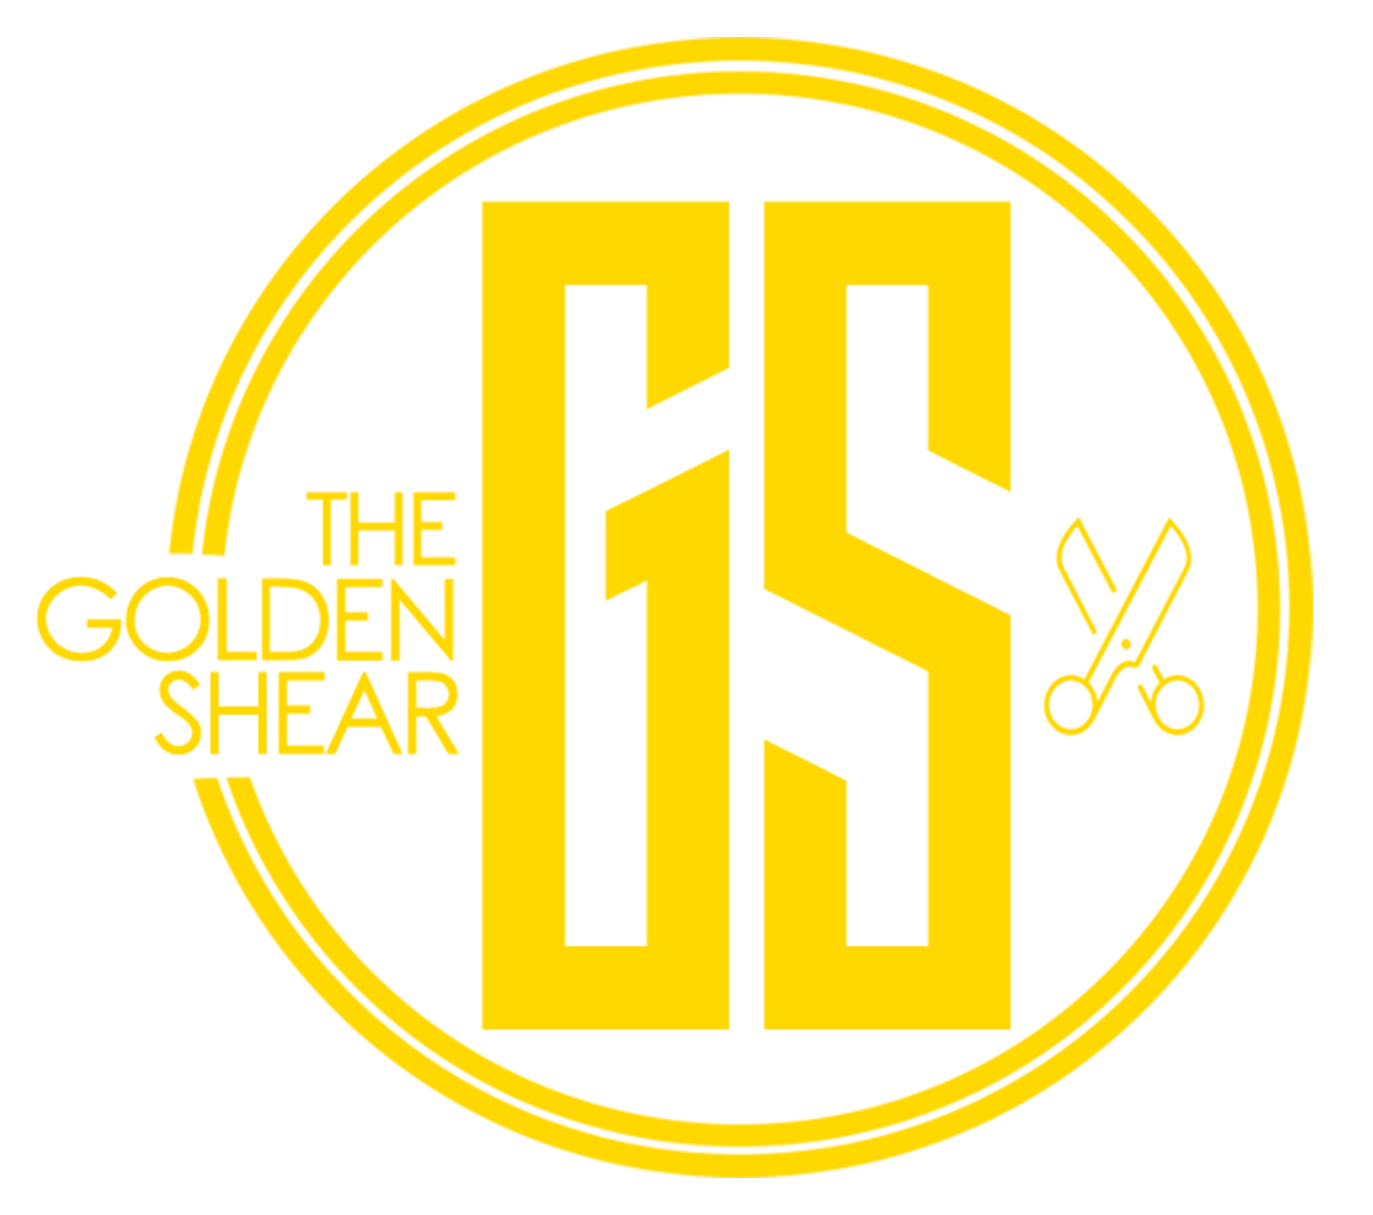 The Golden Shear